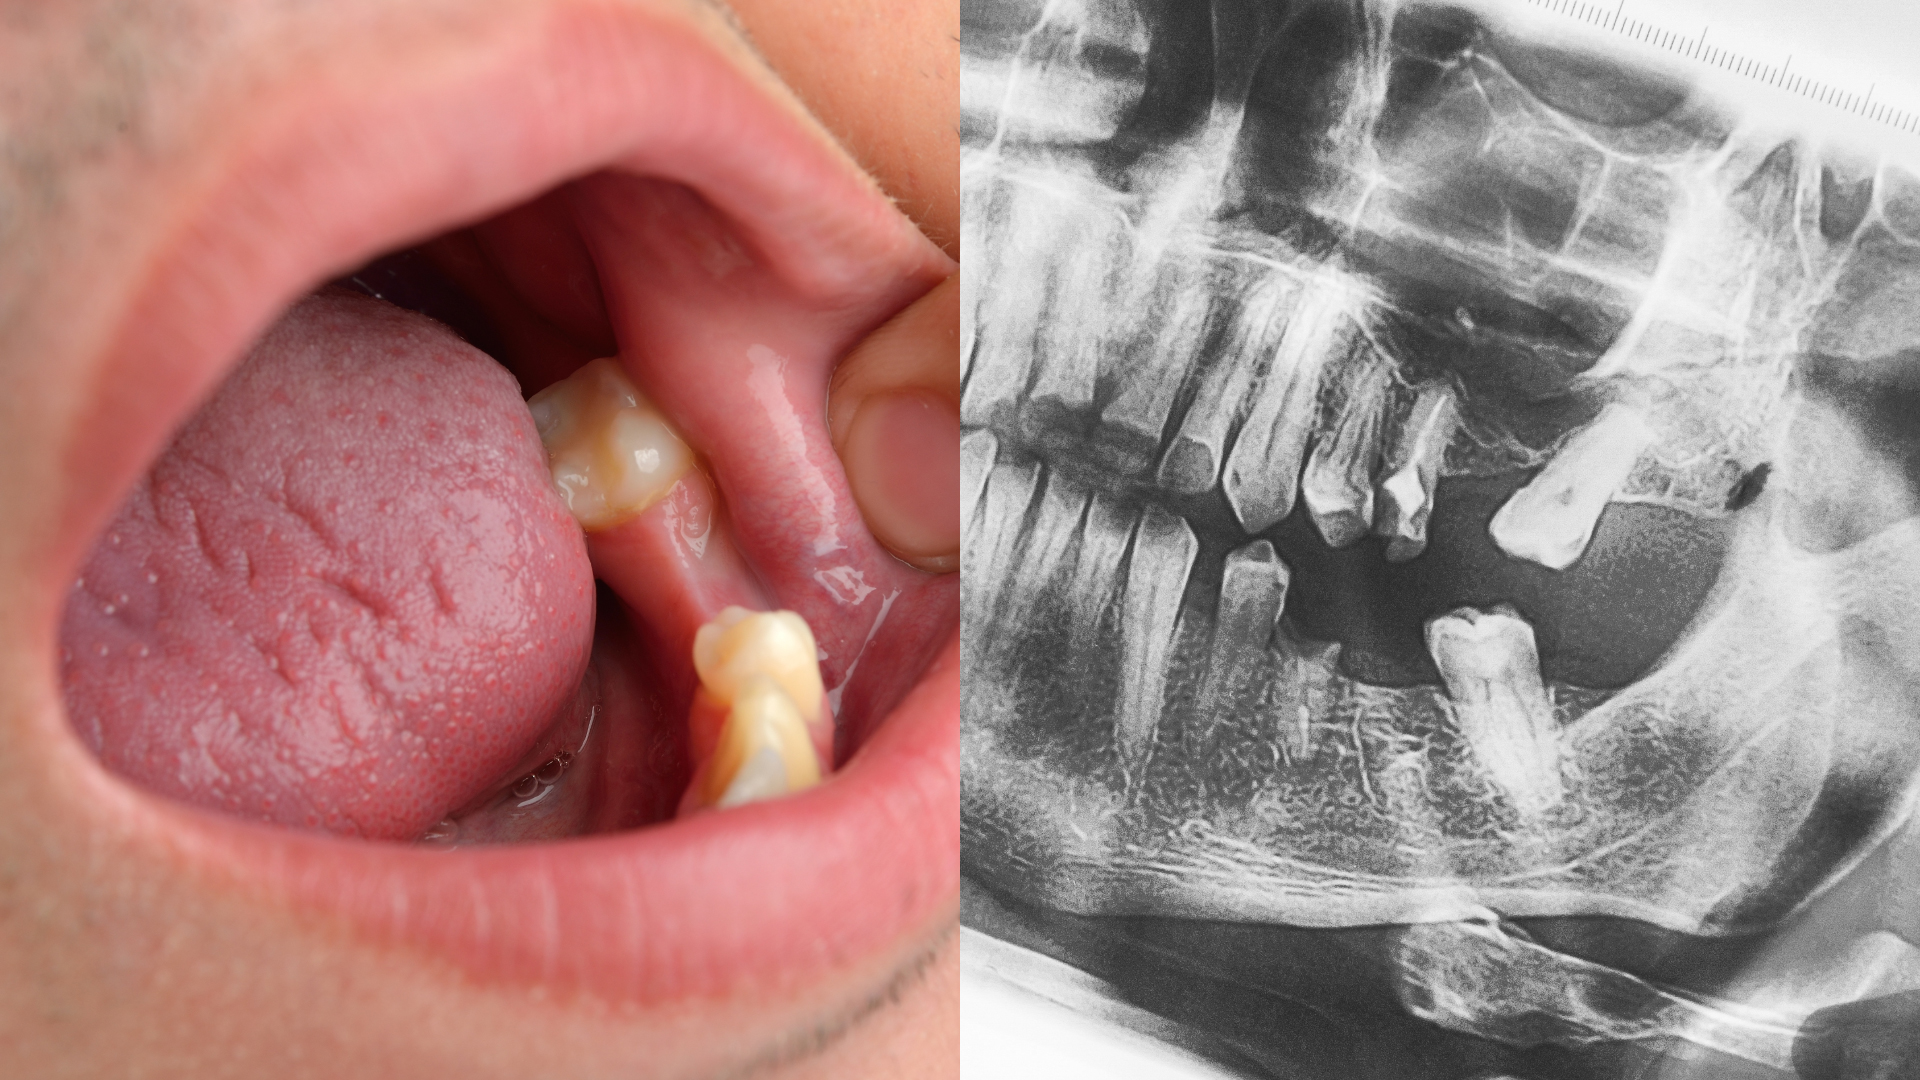 Ciment Dentaire  Colle Dentaire Pour Couronne Bridge Dent sur